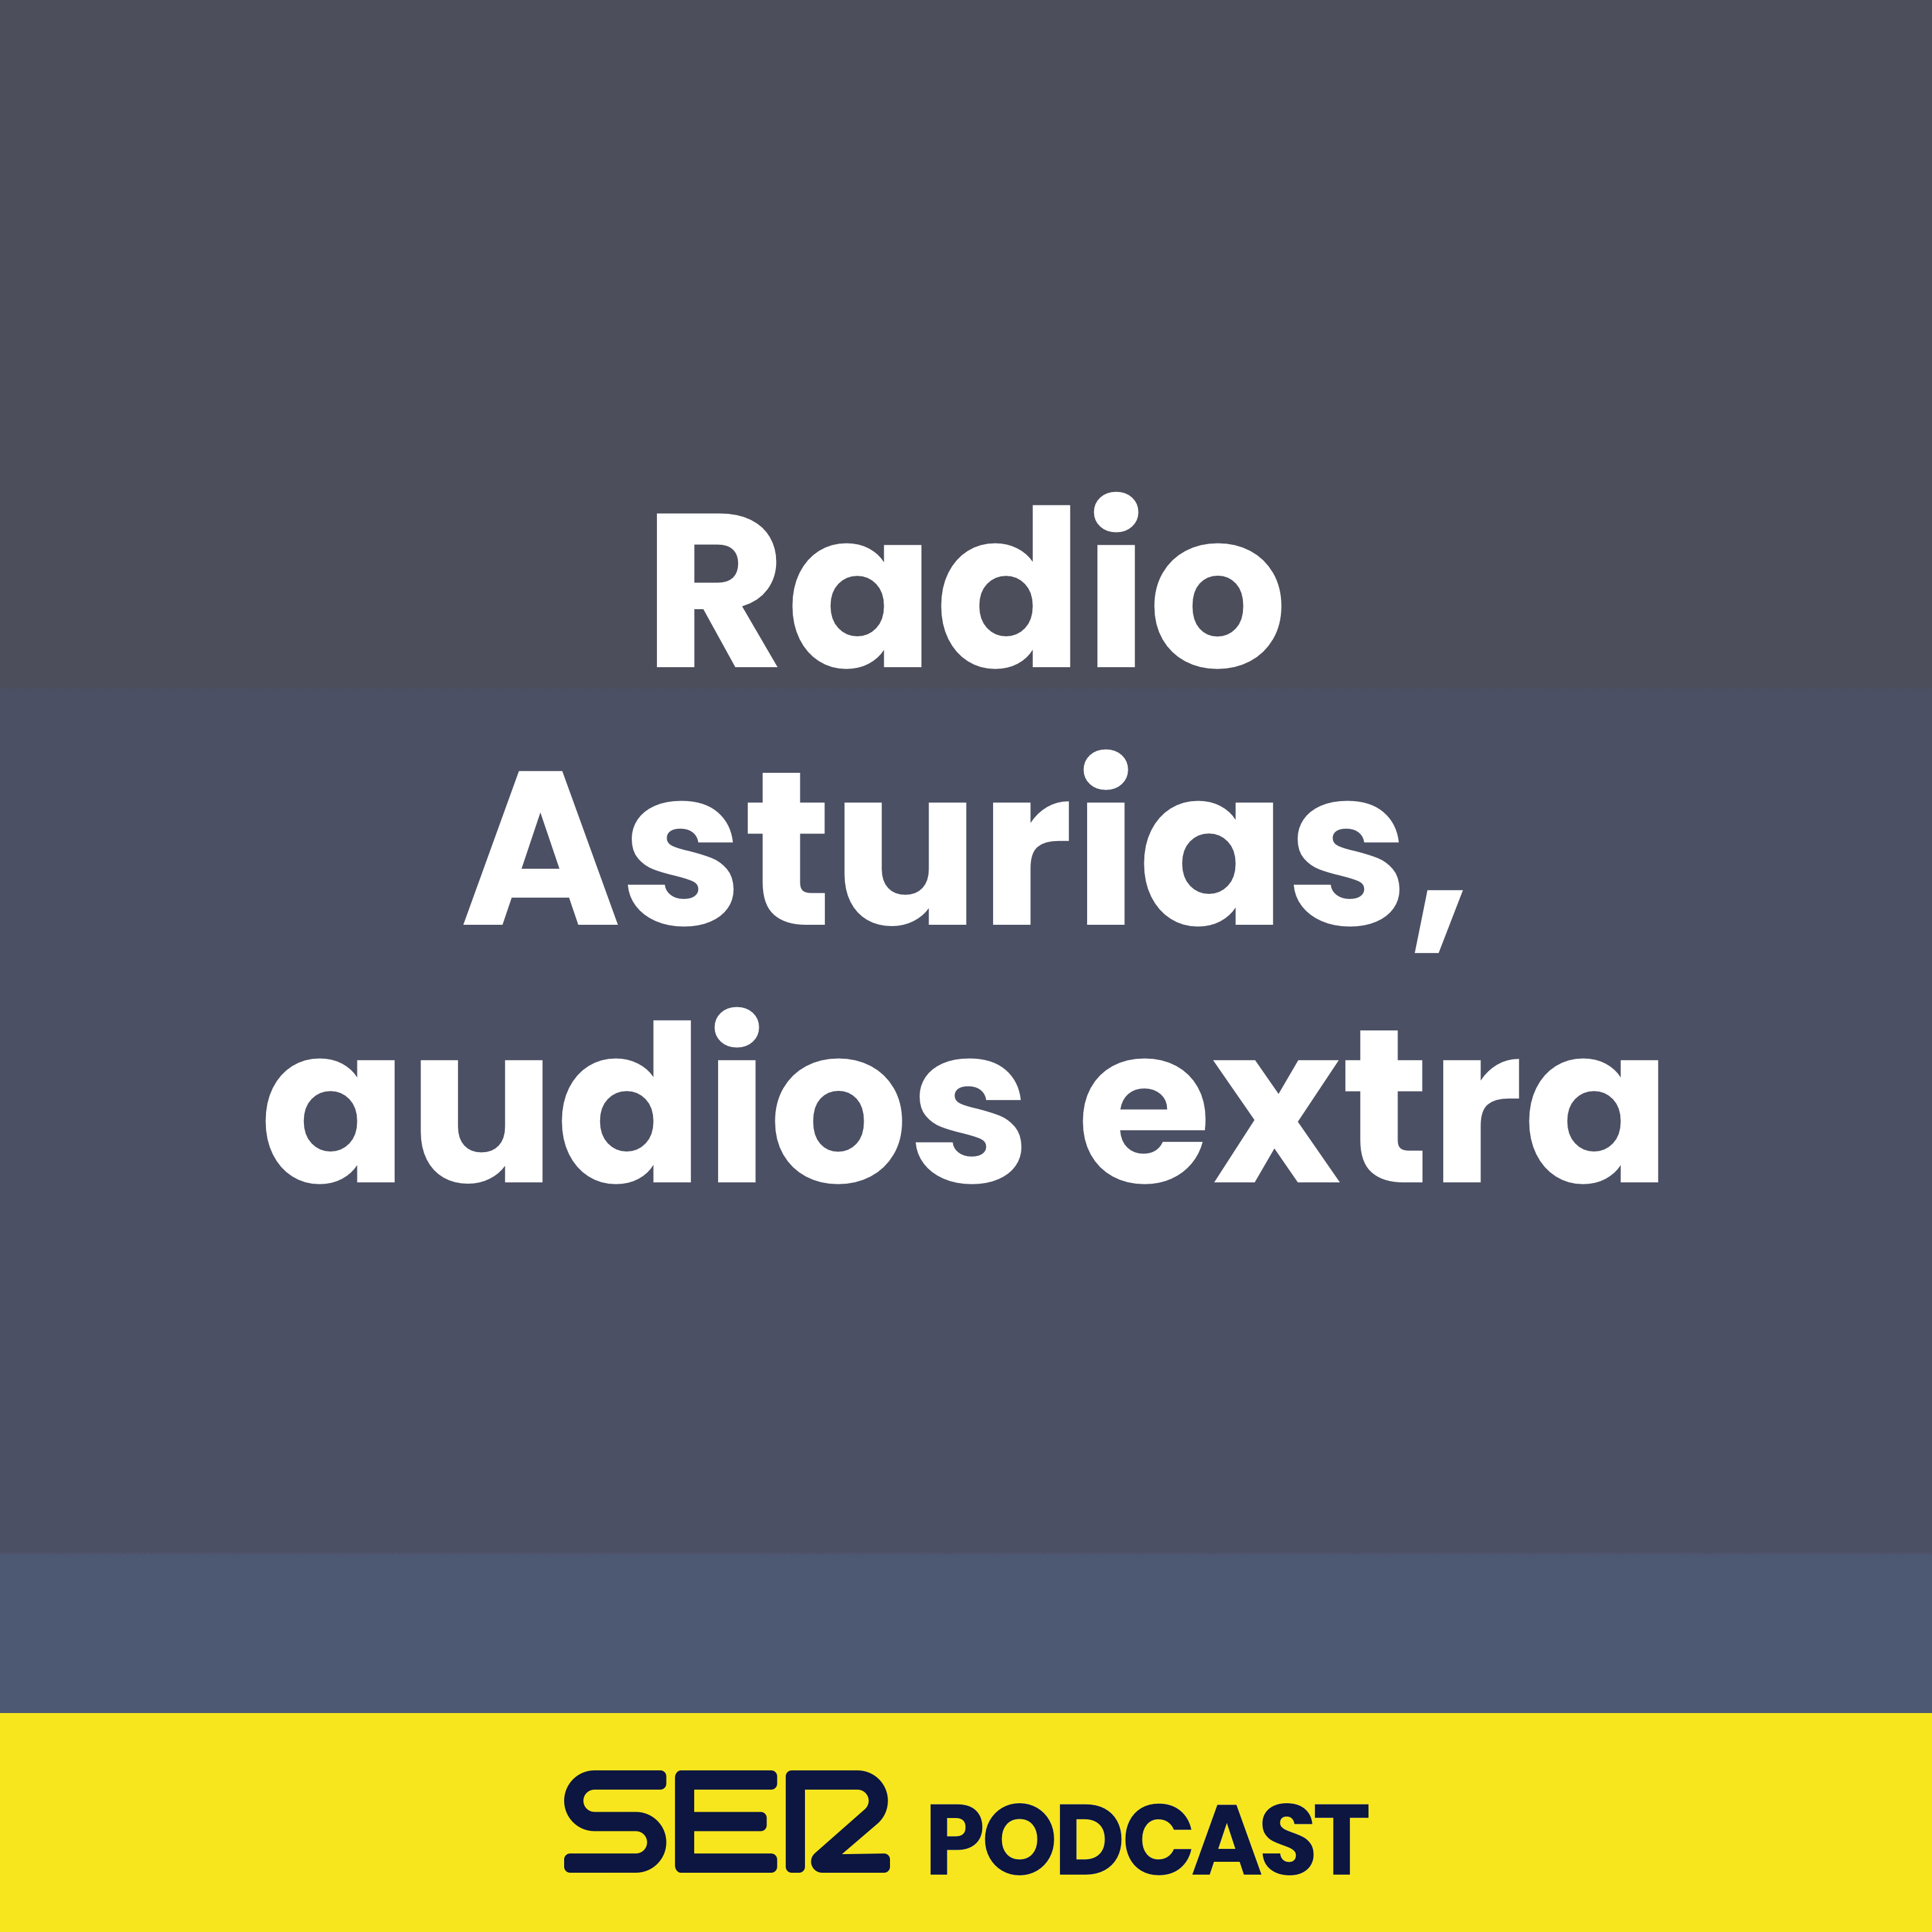 Radio Asturias, audios extra